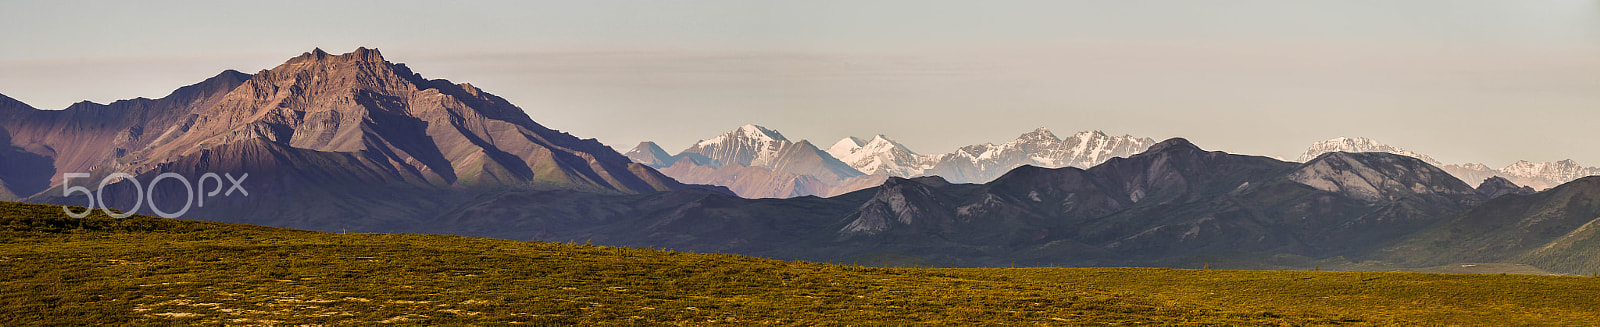 Panasonic Lumix DMC-G5 sample photo. Denali national park panorama - 02 photography